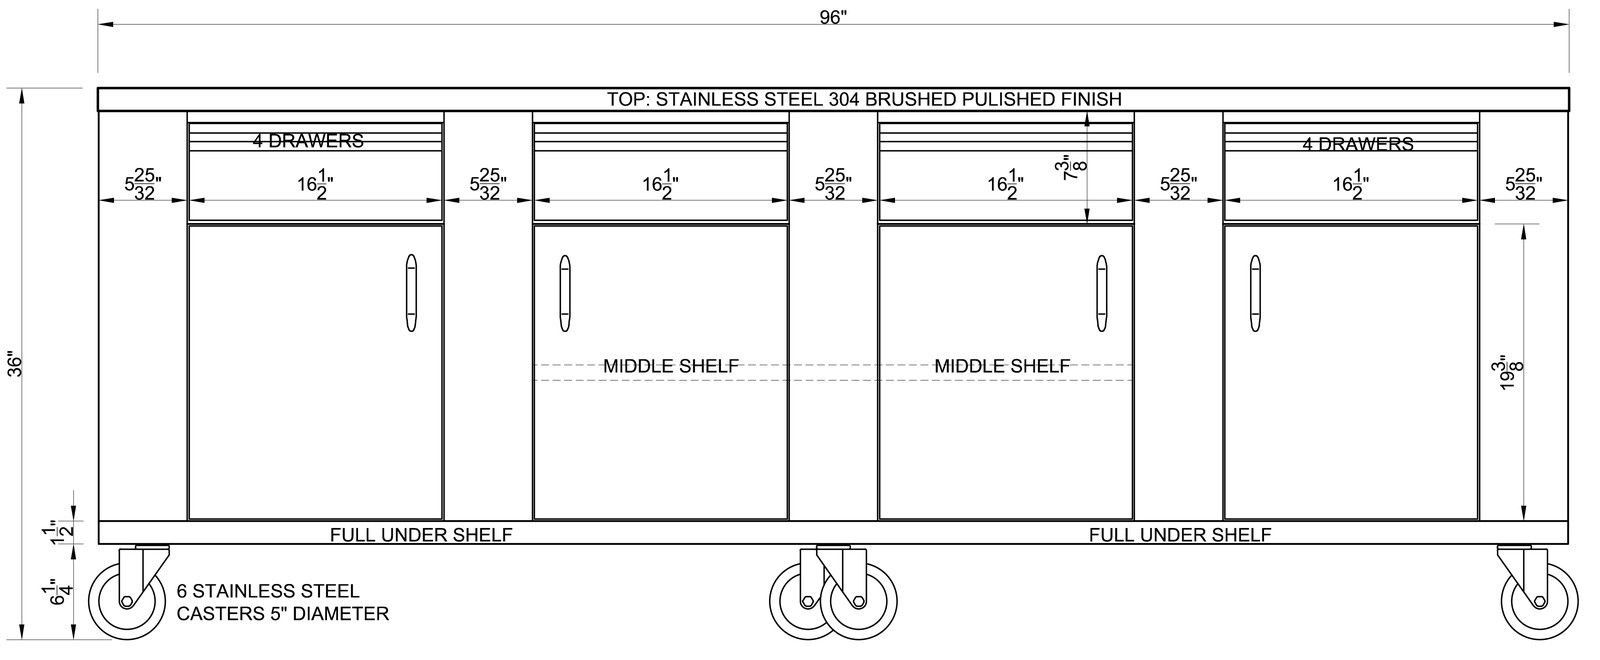 STAINLESS STEEL PREPARATION ISLAND TABLE 30"X96" 4 DRAWERS, 4 DOORS & SHELVES - Best Sheet Metal, Inc. 